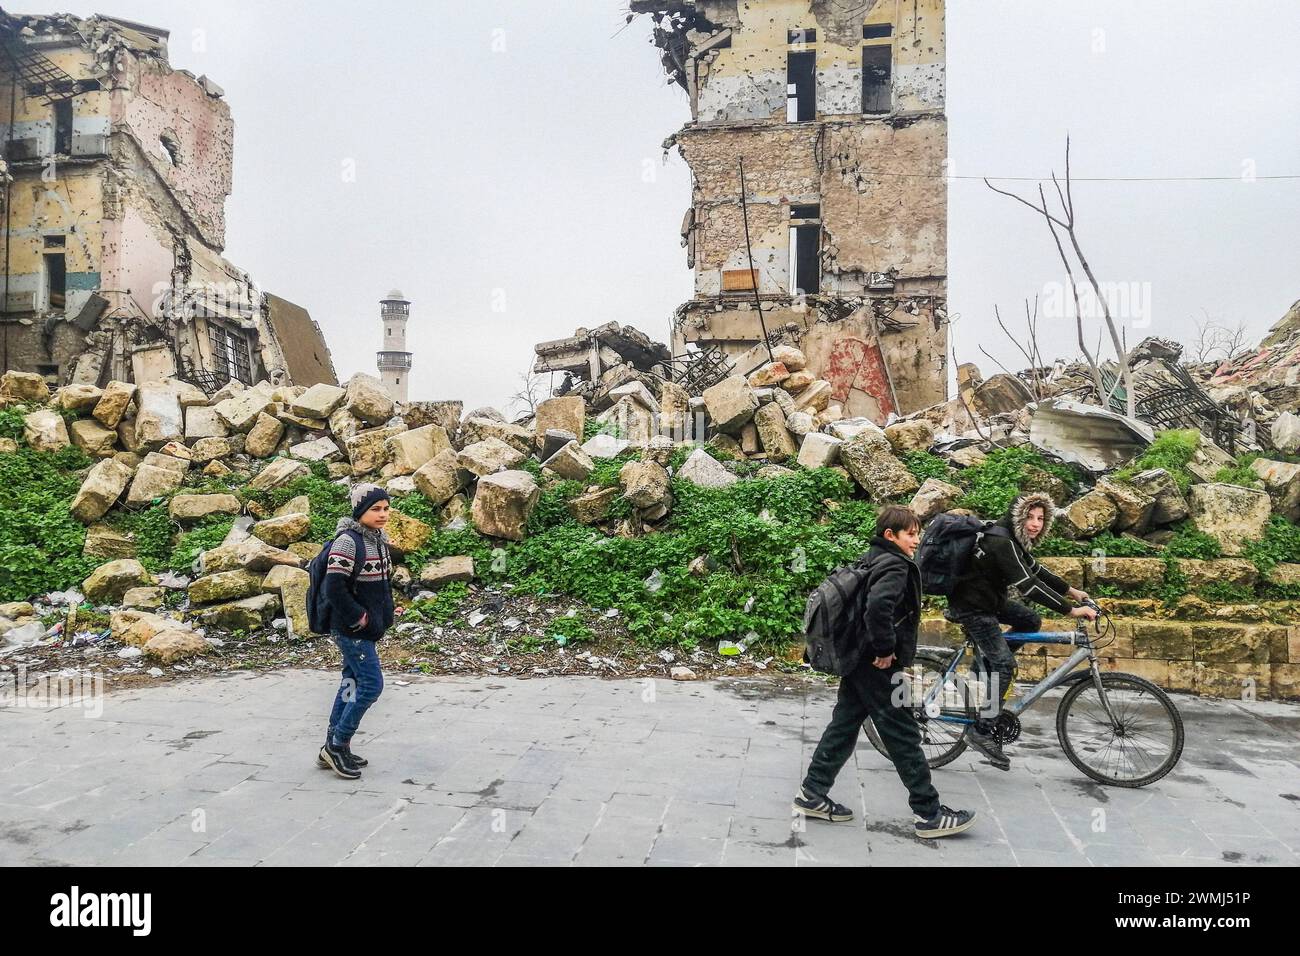 Syria, Aleppo, daily life Stock Photo